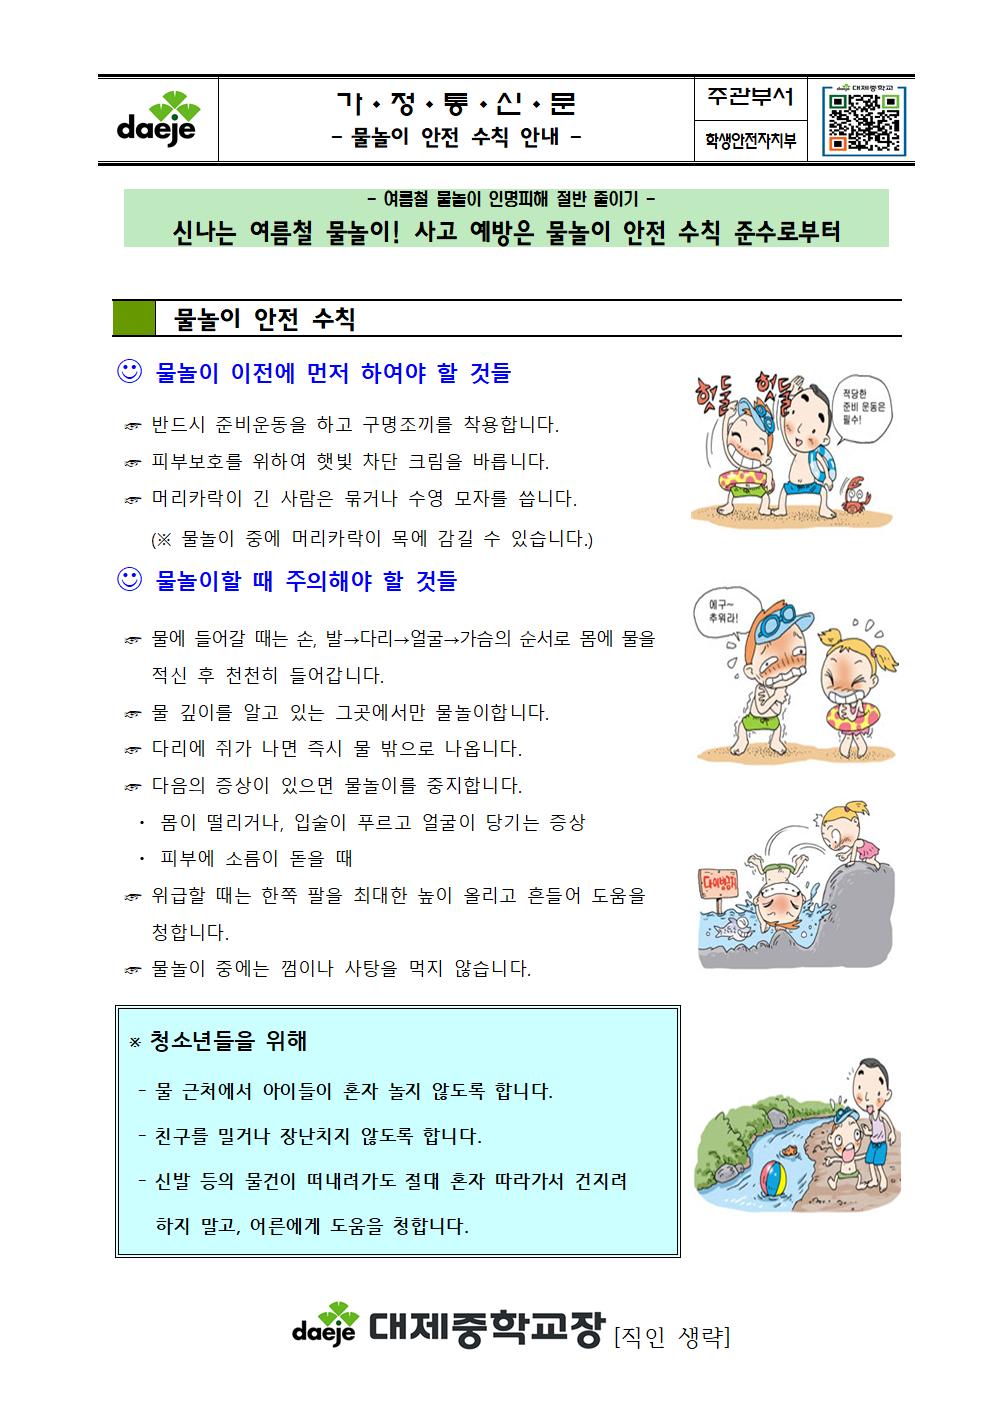 [가정통신문] 물놀이 안전수칙 안내